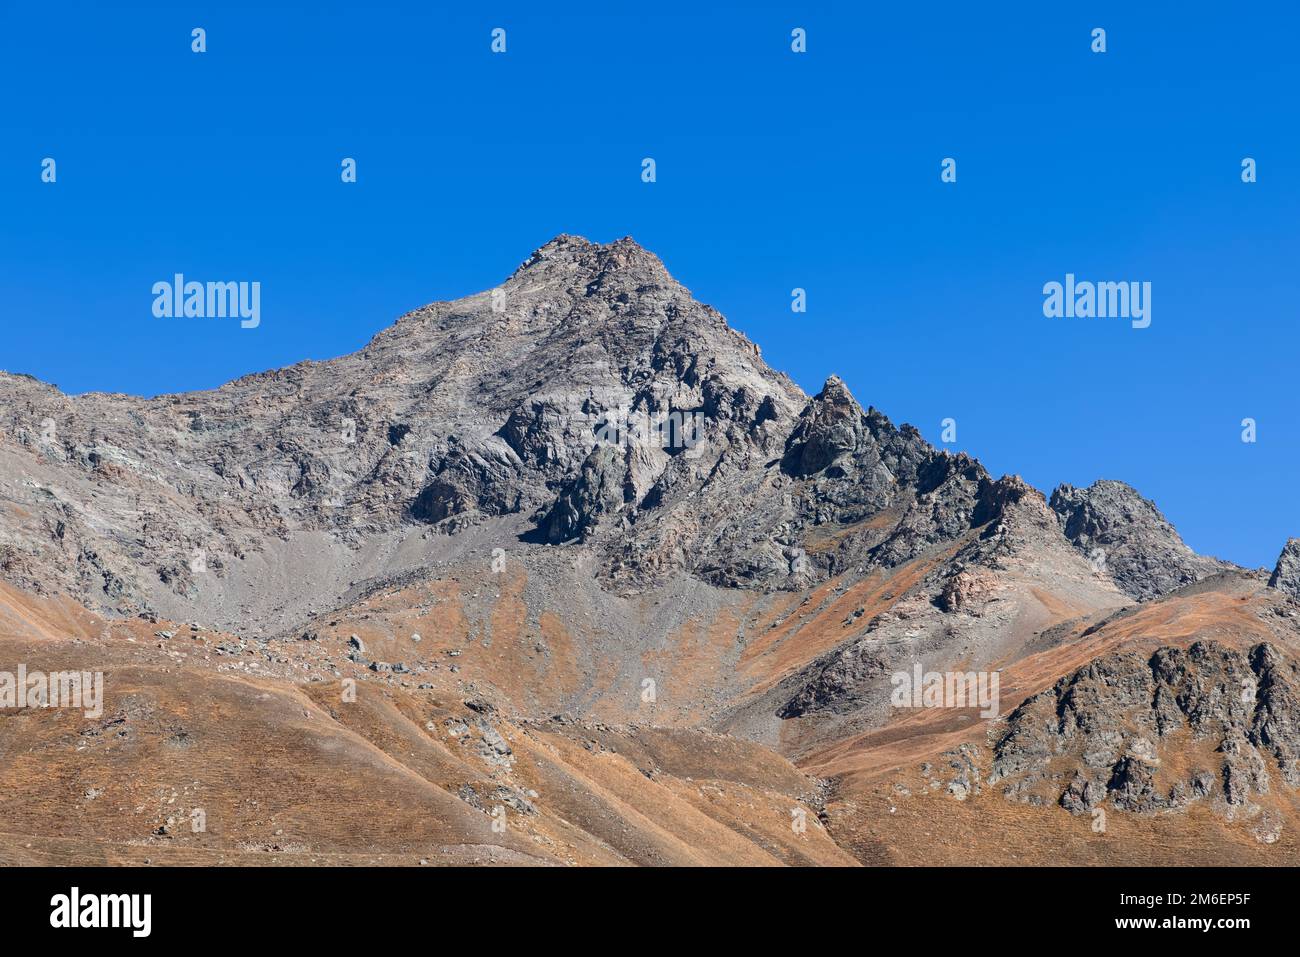 Ladera vertical del cuervo de granito infranqueable y rocas inclinadas con el pico negro superior bajo el fondo del cielo azul claro, valle de Aosta, Italia Foto de stock